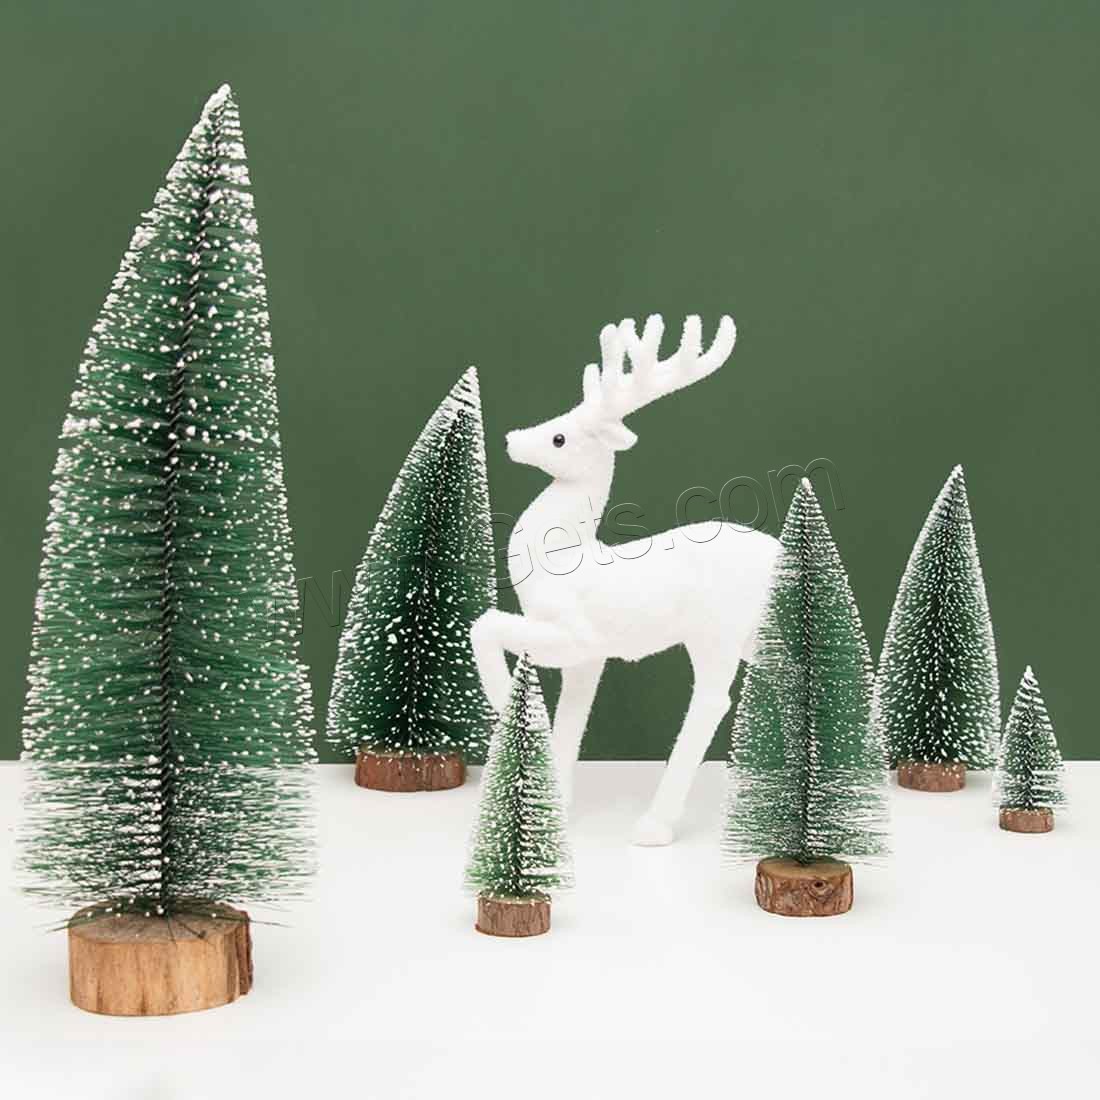 Groß Weihnachtsbaum zu schmücken Ihr Haus, Holz, Mini & Weihnachtsschmuck & verschiedene Größen vorhanden, grün, verkauft von PC